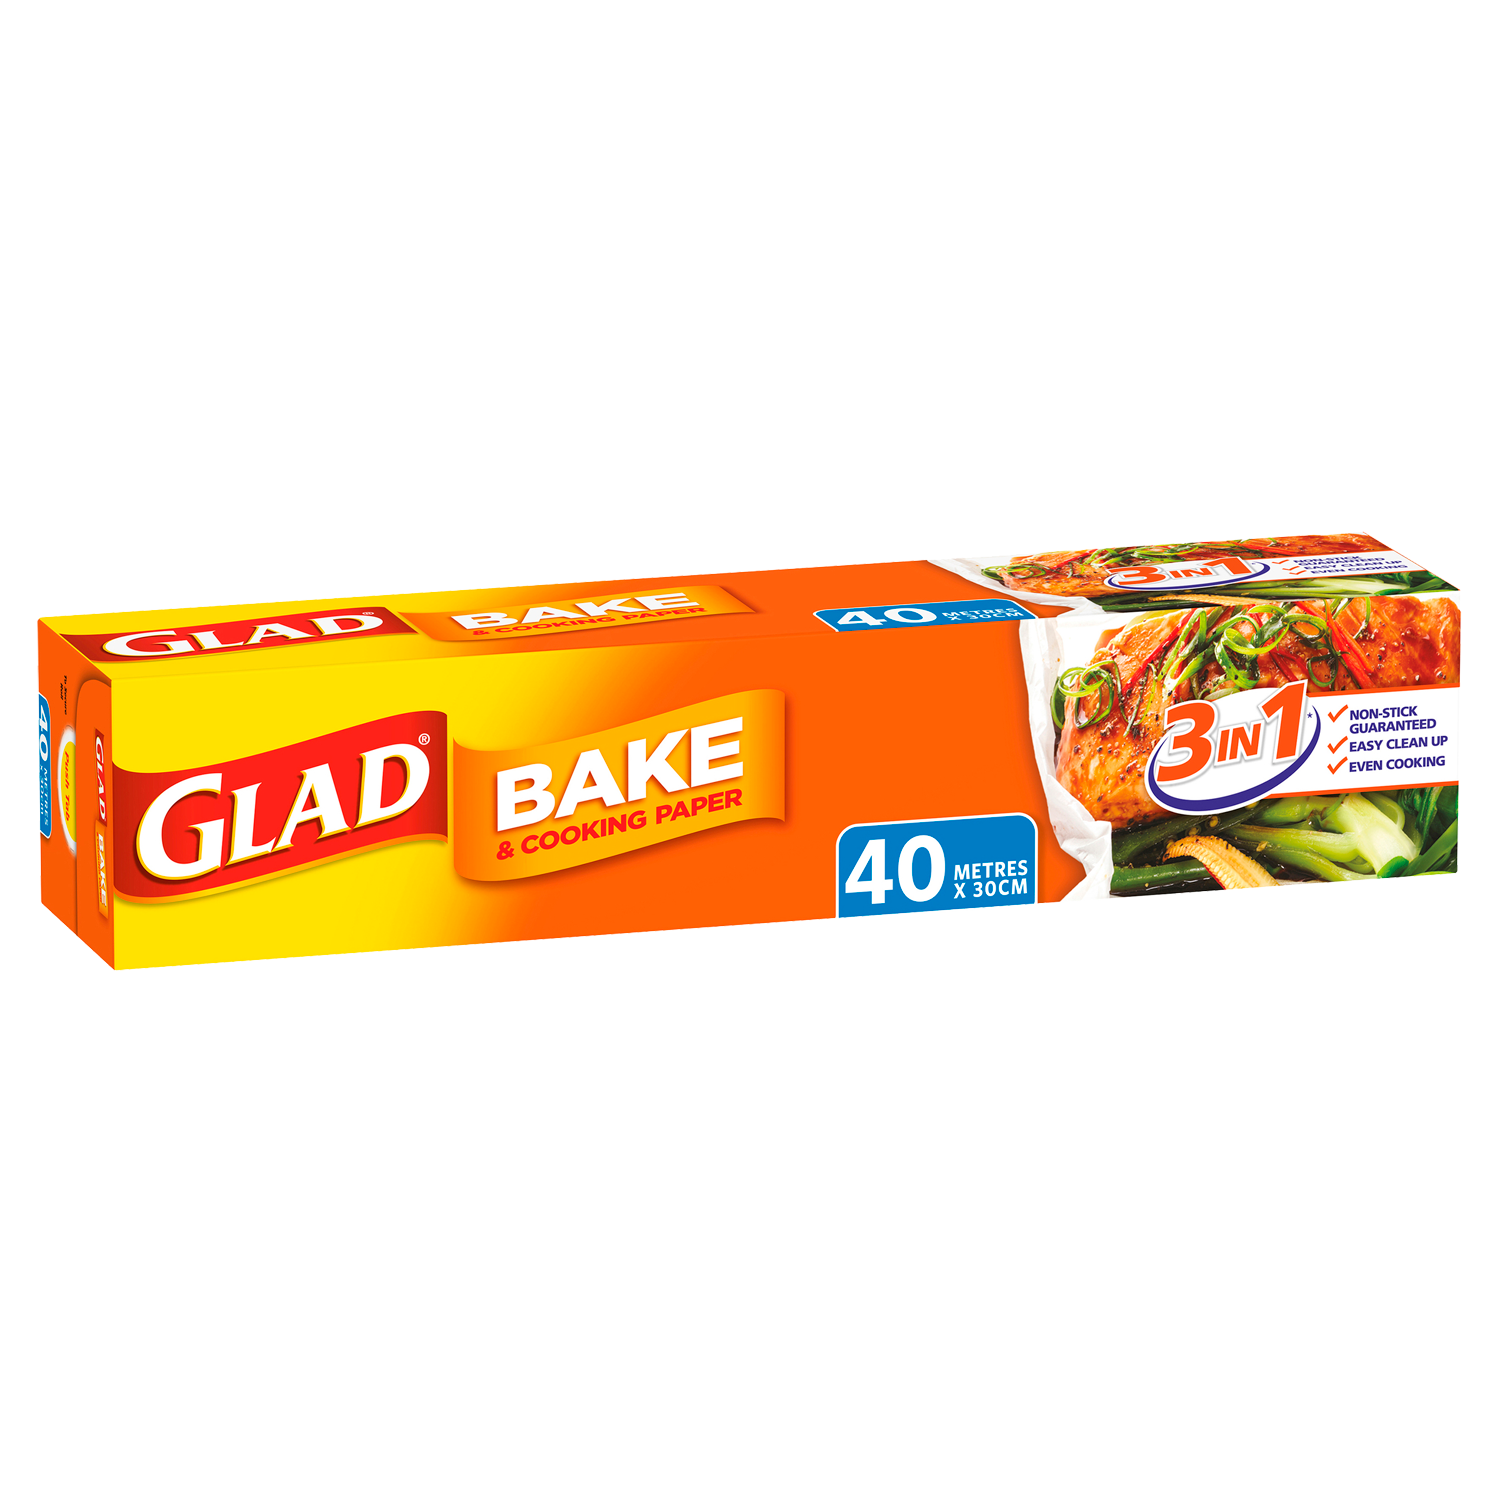 Glad Bake & Cooking® Paper 25m, Glad Australia